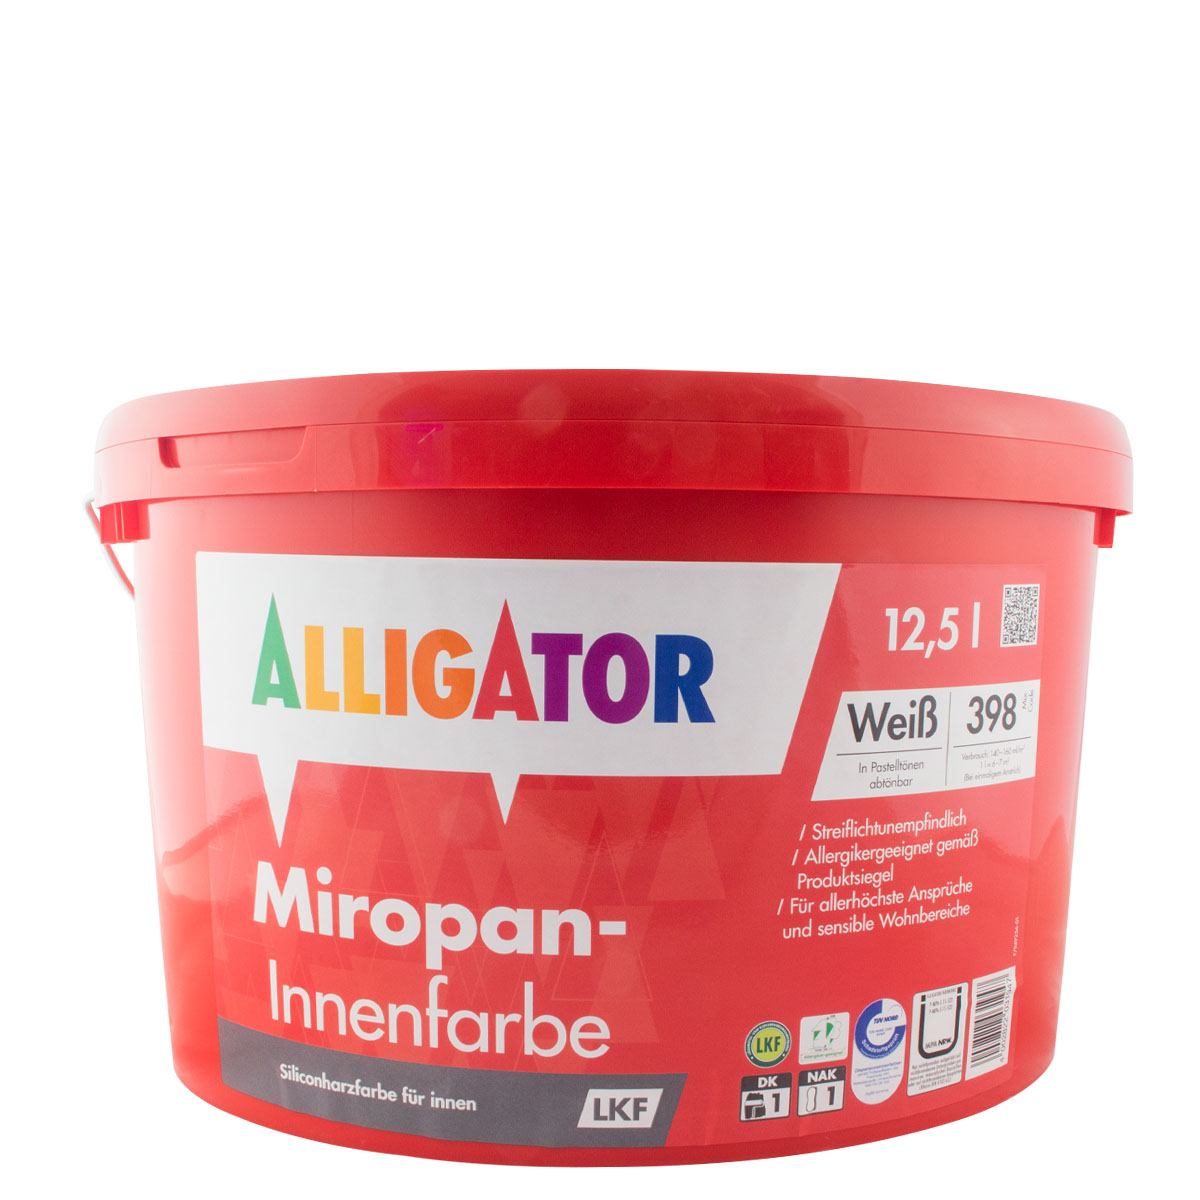 Alligator Miropan Innenfarbe LKF 12,5L weiß, Siliconharz-Innenfarbe